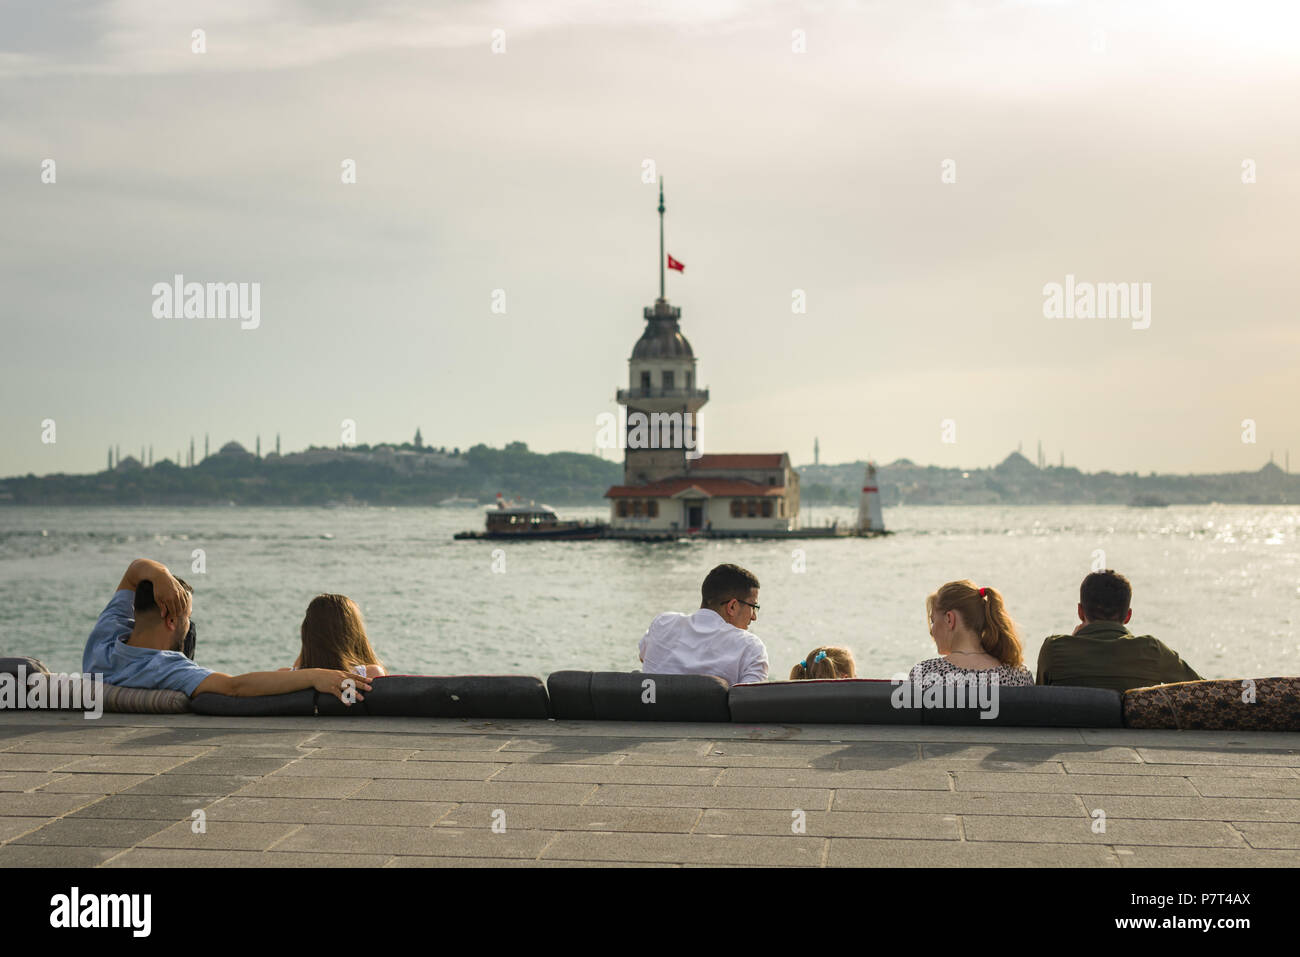 Personas sentadas disfrutando de la vista con la Torre de la Doncella o Kız Kulesi en el fondo, Estambul, Turquía Foto de stock